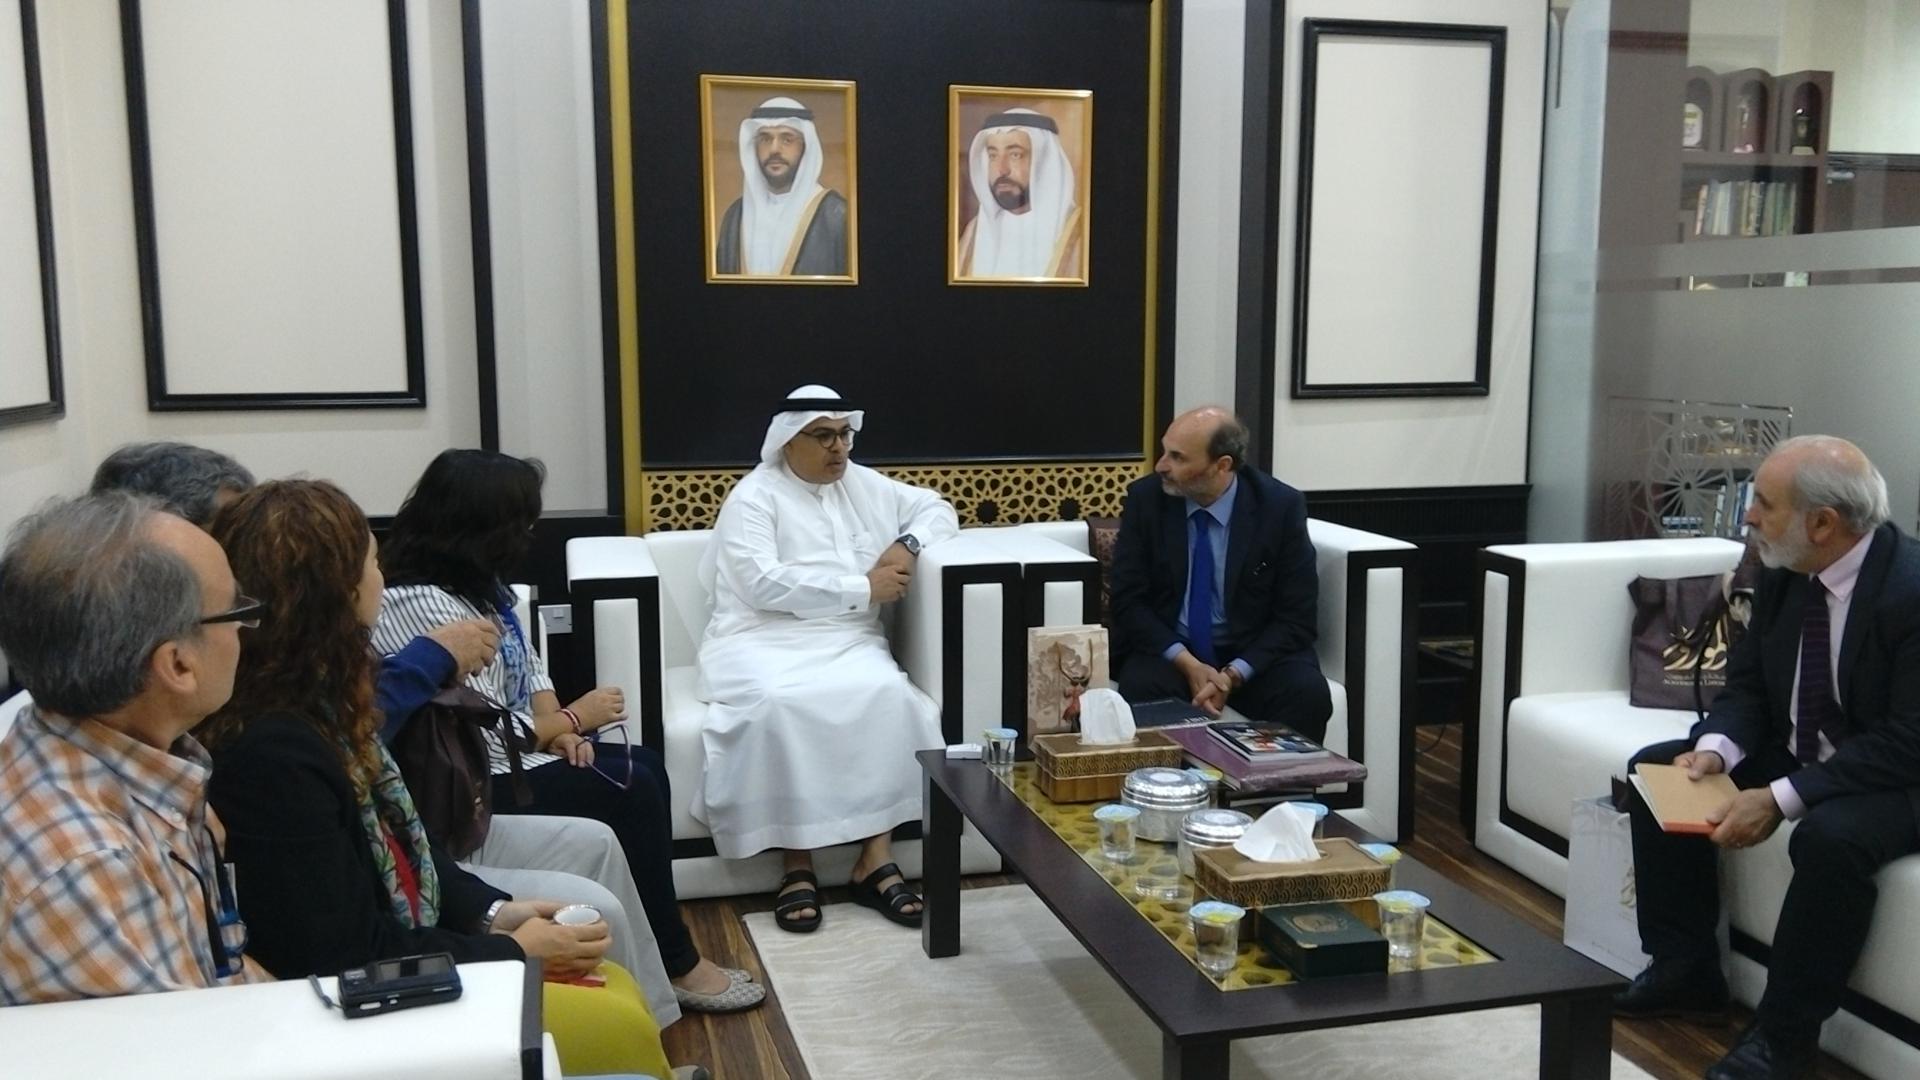 El director de la Dibam Ángel Cabeza con parte de la delegación nacional, junto a representantes del Emirato de Sharjah